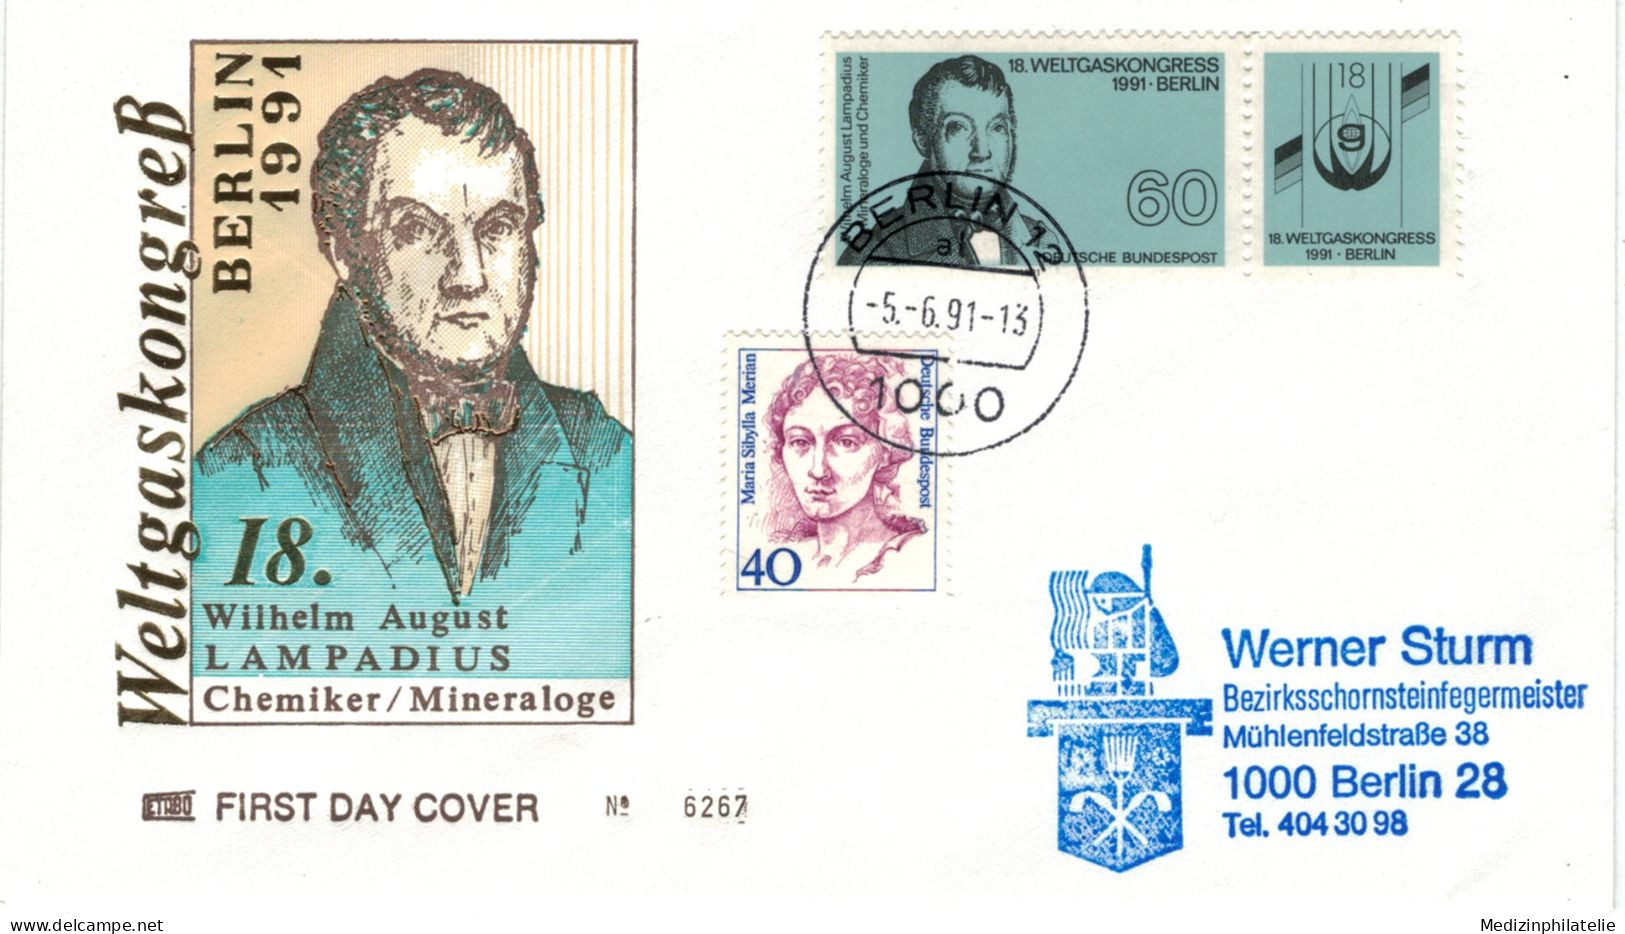 Wilhelm August Eberhard Lampadius War Ein Deutscher Hüttentechniker, Chemiker Und Agronom - 1 Berlin 1991 Zusammendruck - Chemistry